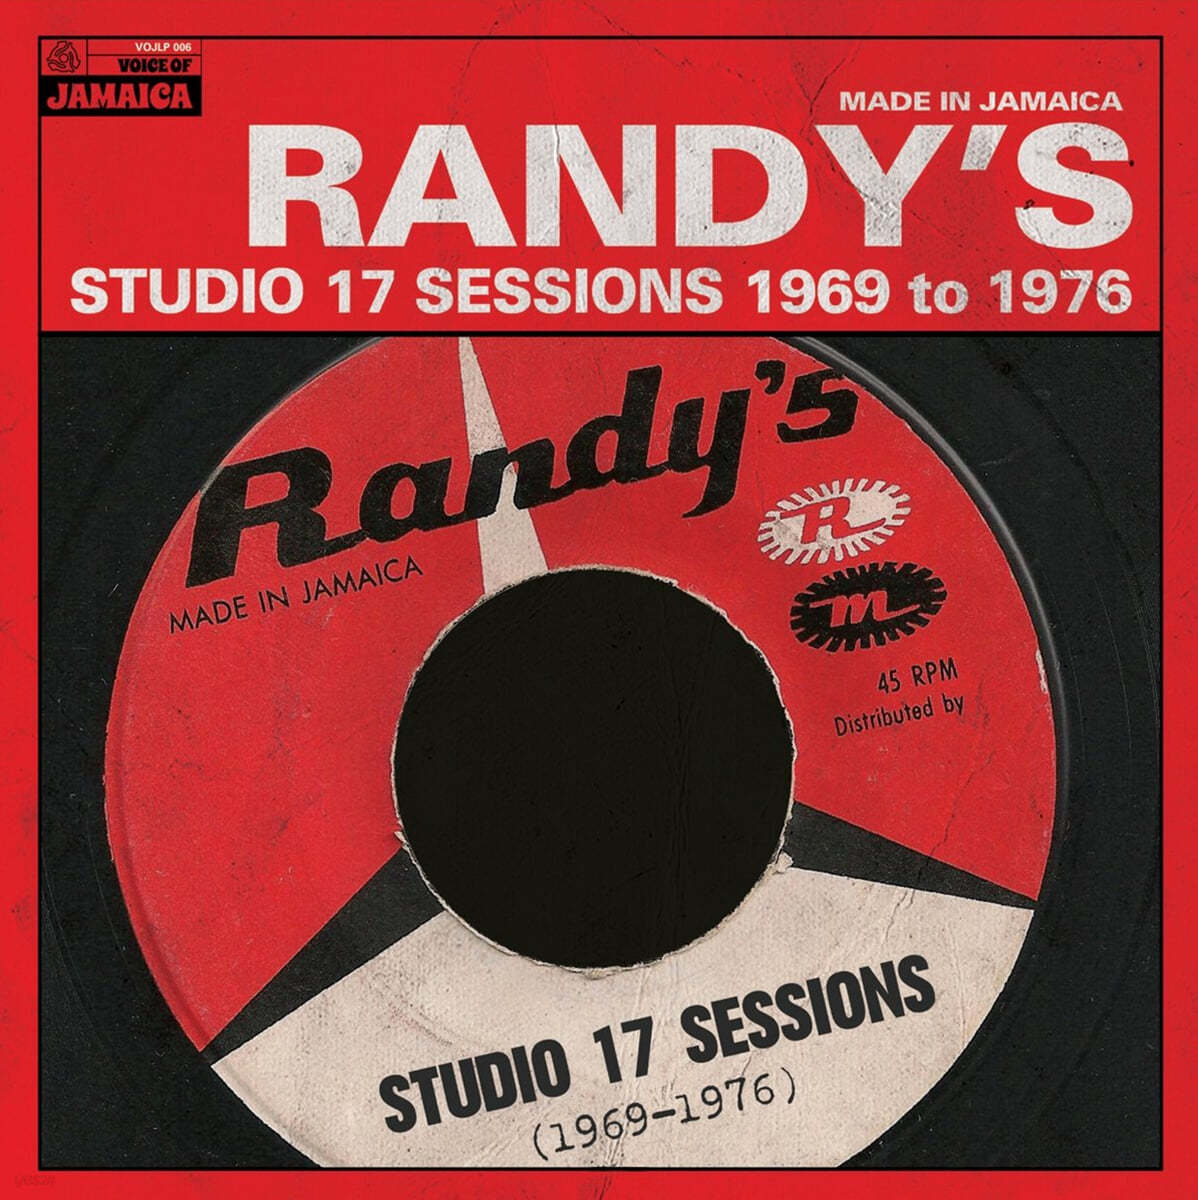 1969-1976 랜디스 스튜디오 17 세션 모음 (Randy's Studio 17 Sessions 1969 to 1976) [LP] 